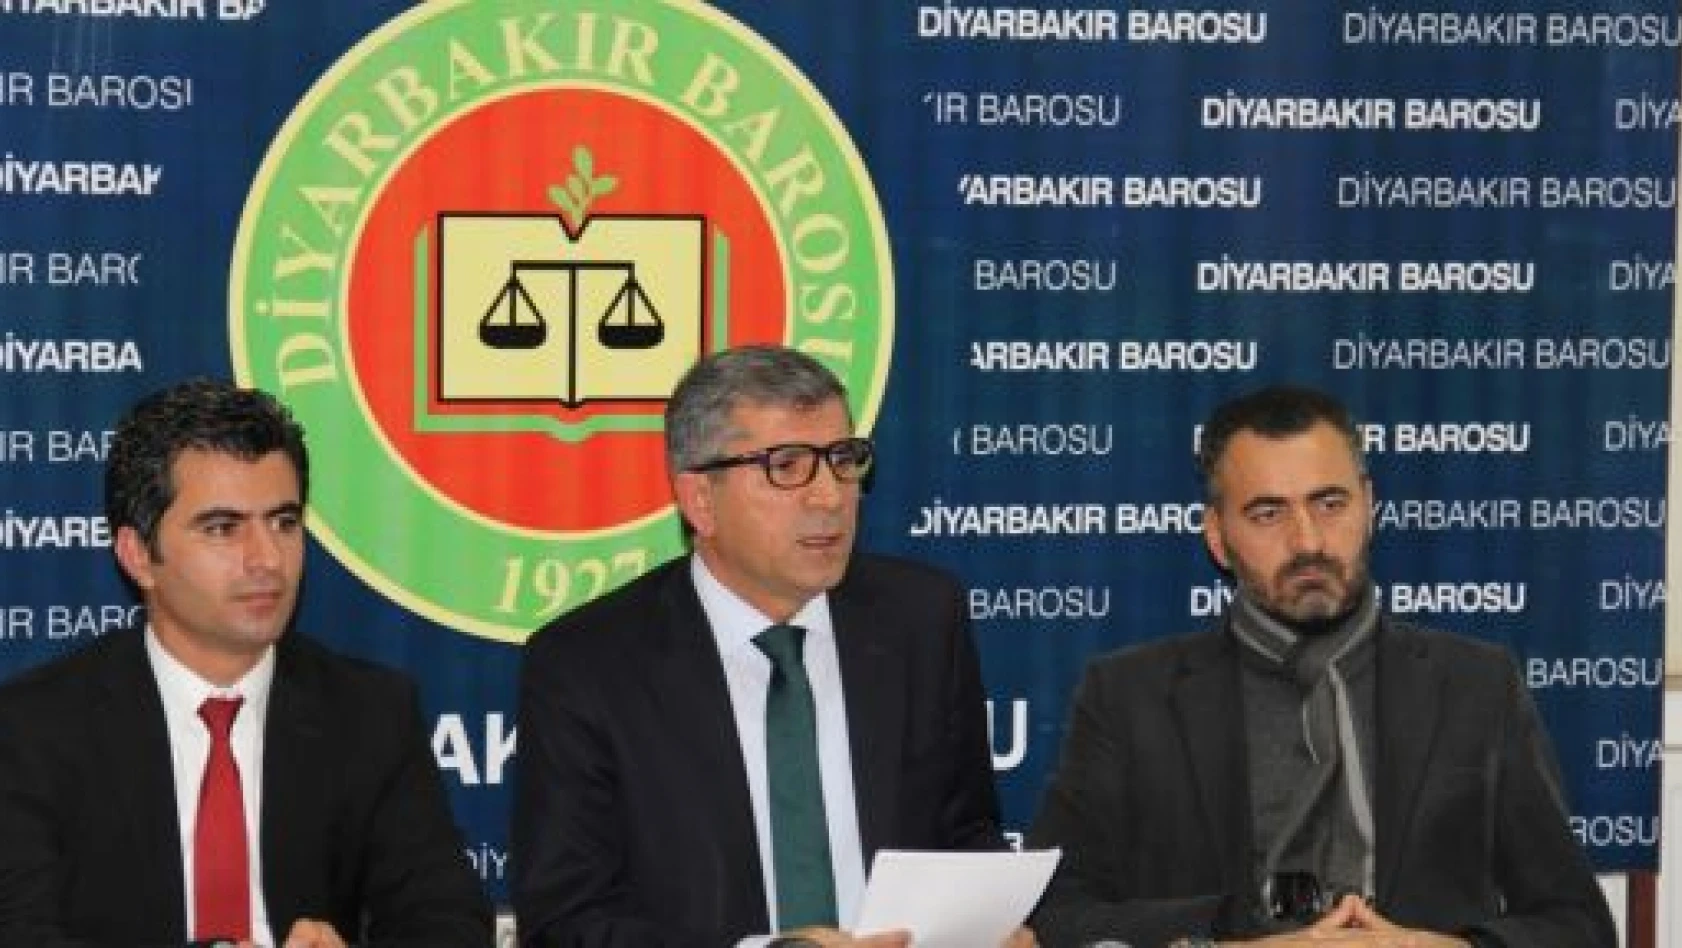 BDP'li tutuklu milletvekilleri için tahliye başvurusu yapılacak